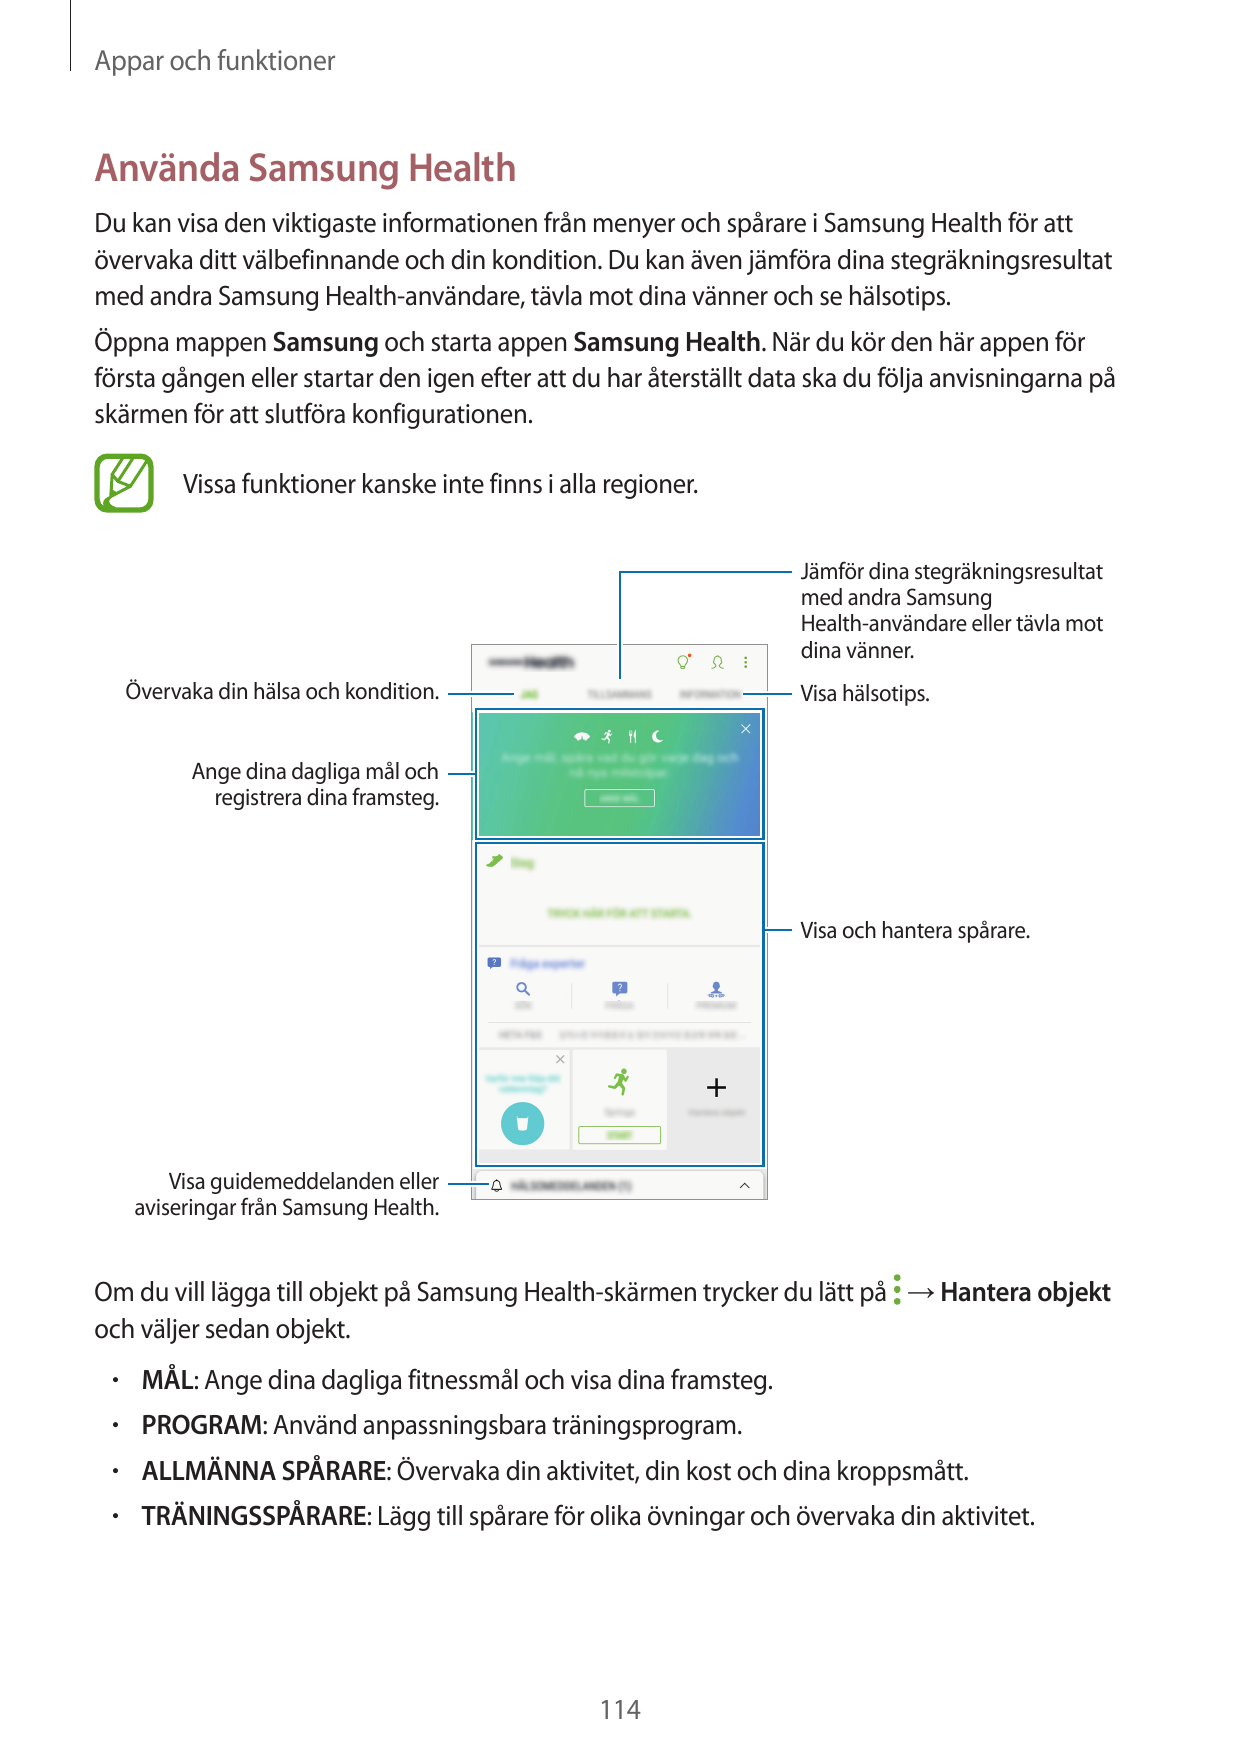 Appar och funktionerAnvända Samsung HealthDu kan visa den viktigaste informationen från menyer och spårare i Samsung Health för 